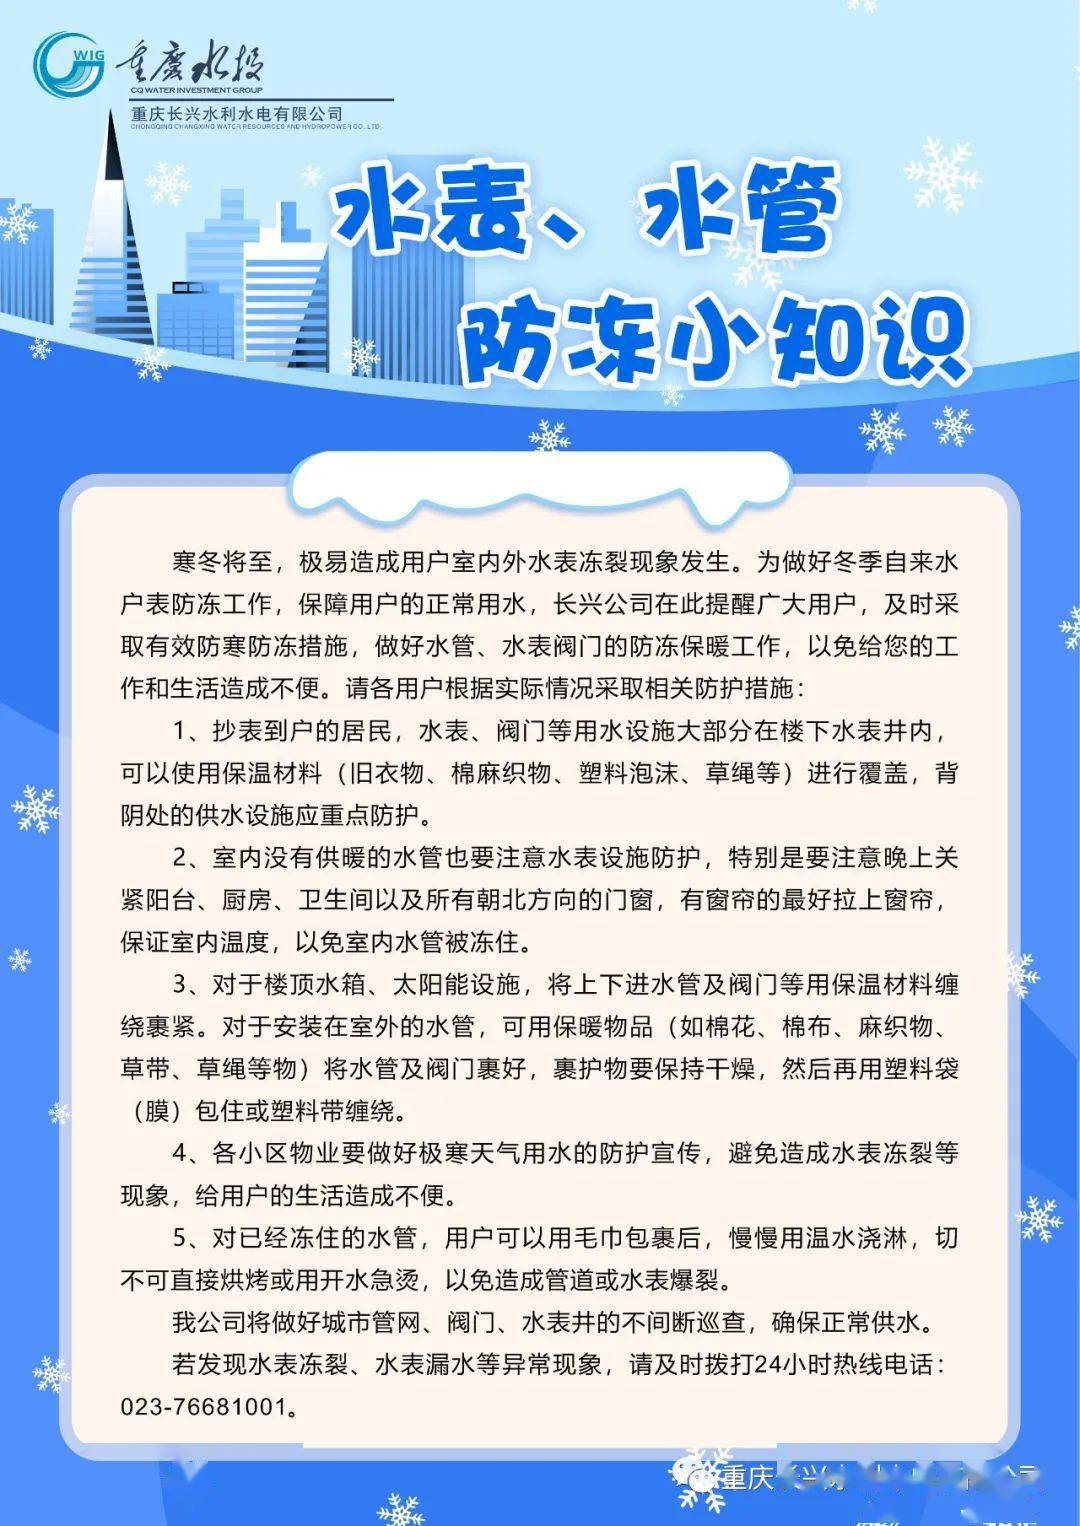 重庆长兴公司:水表水管防冻提醒